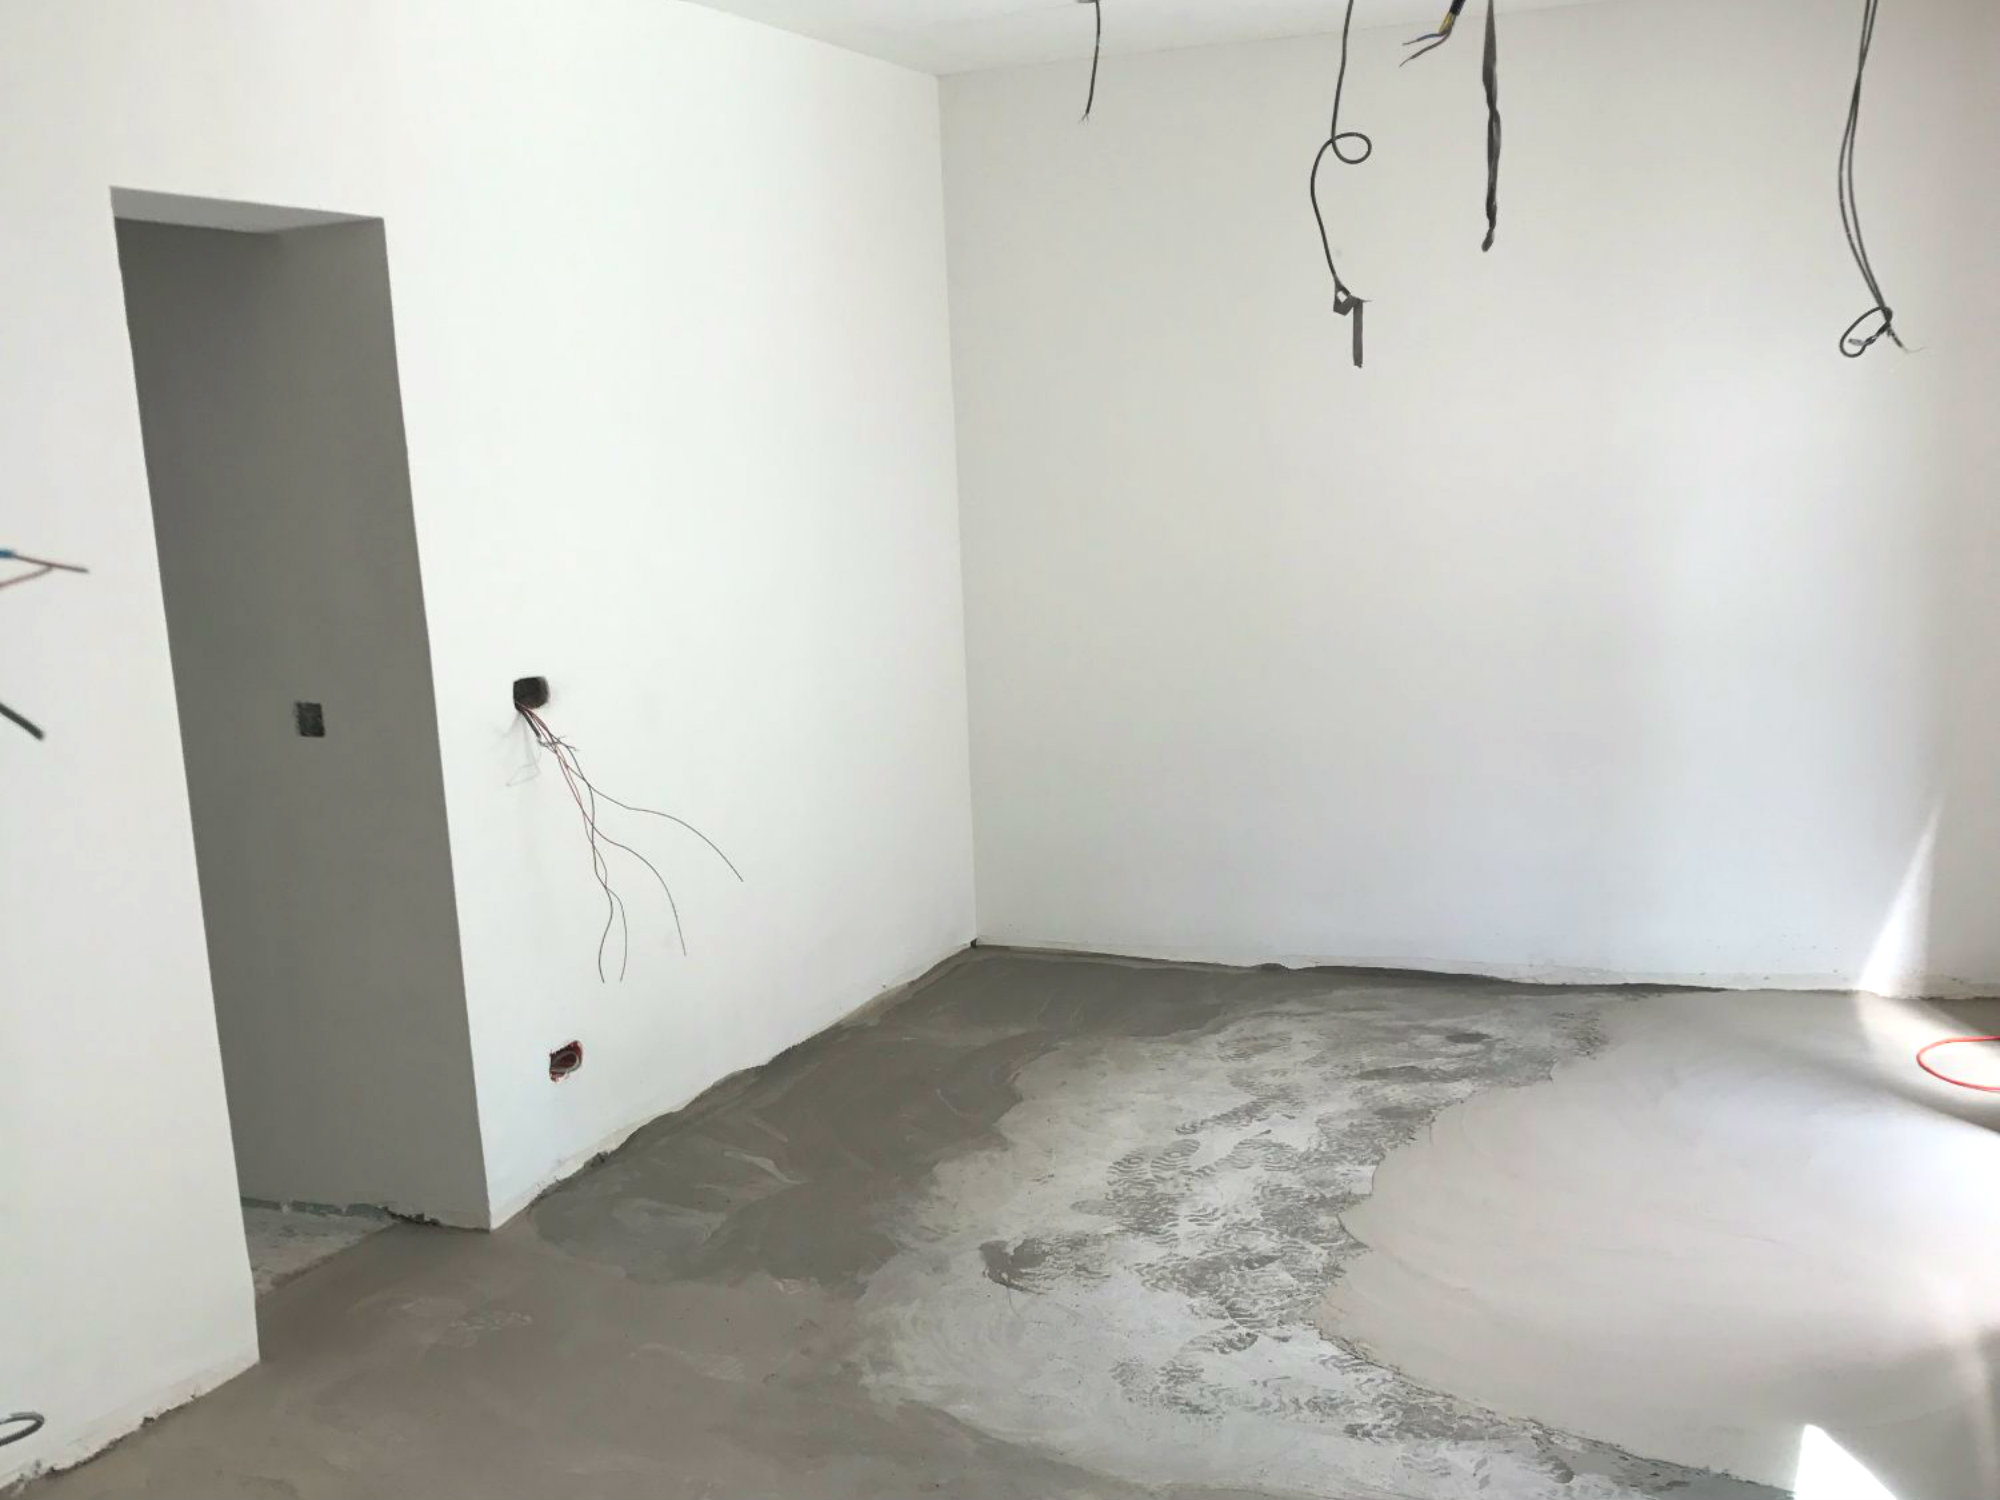 2018_Levallois Perret_travaux renovation appartement_Eolh btp france 2_BD